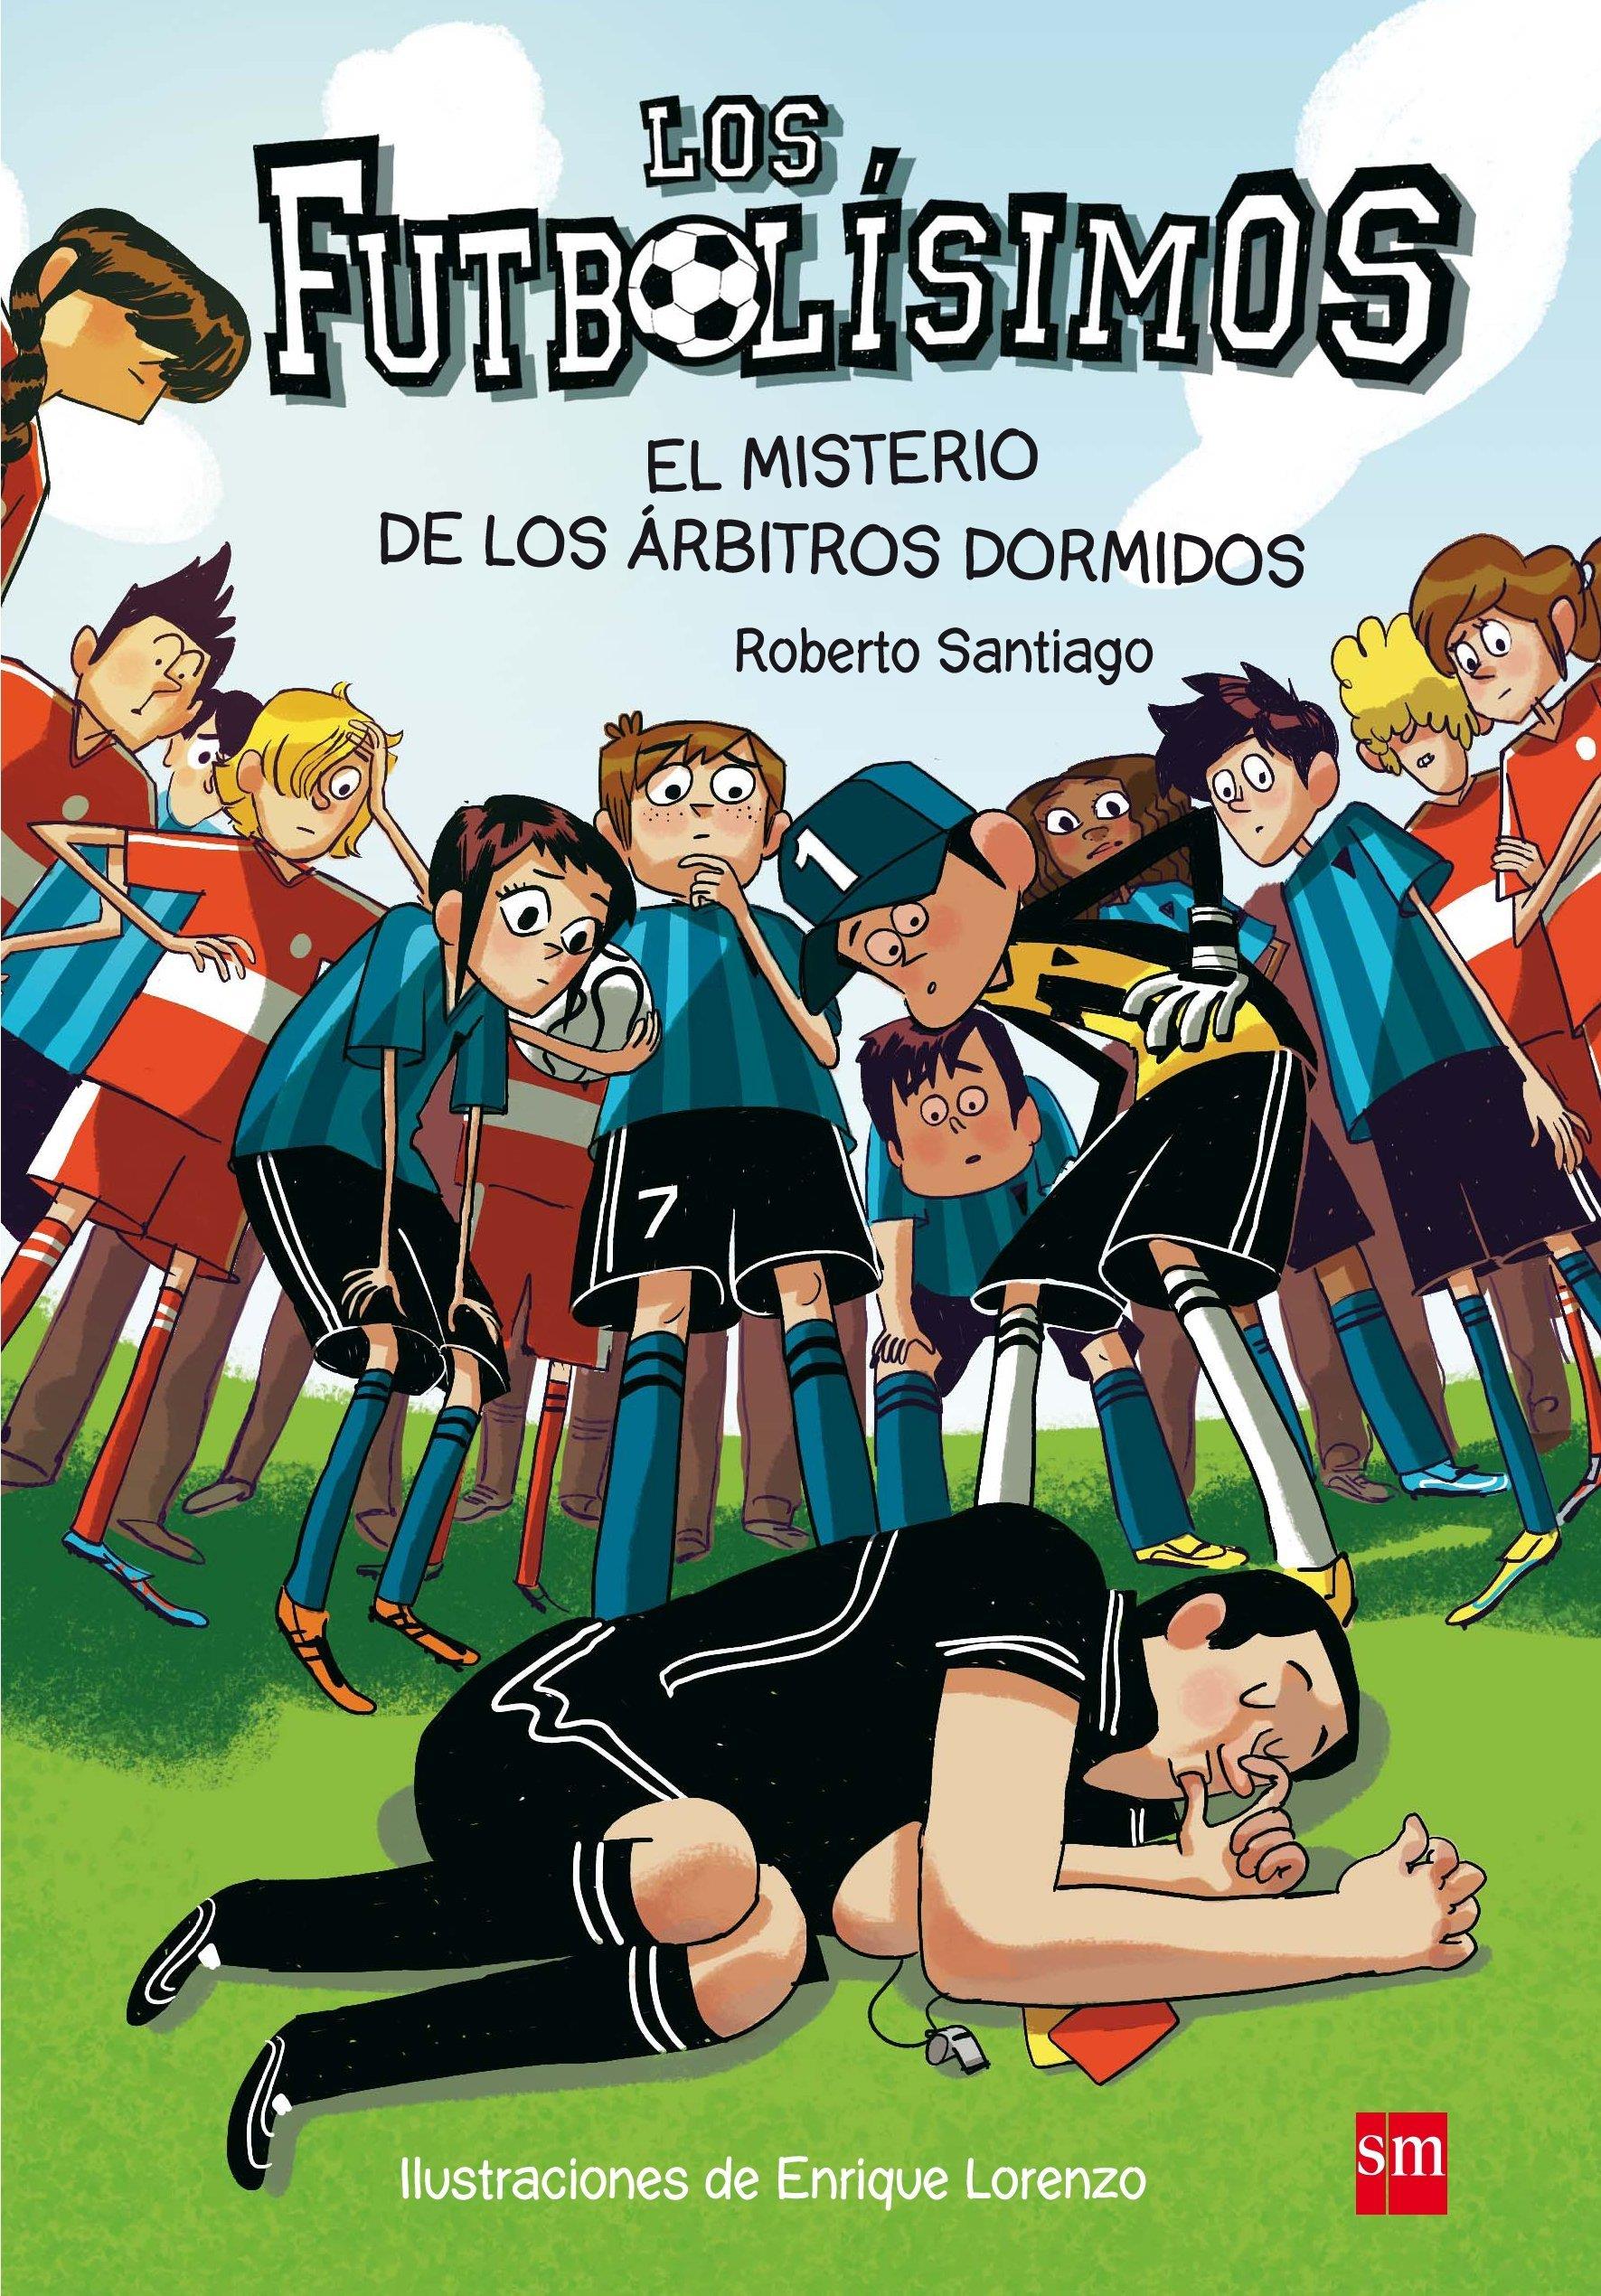 Εκδόσεις Sm - Futbolisimos: El misterio de los arbitros dormidos - Roberto Santiago